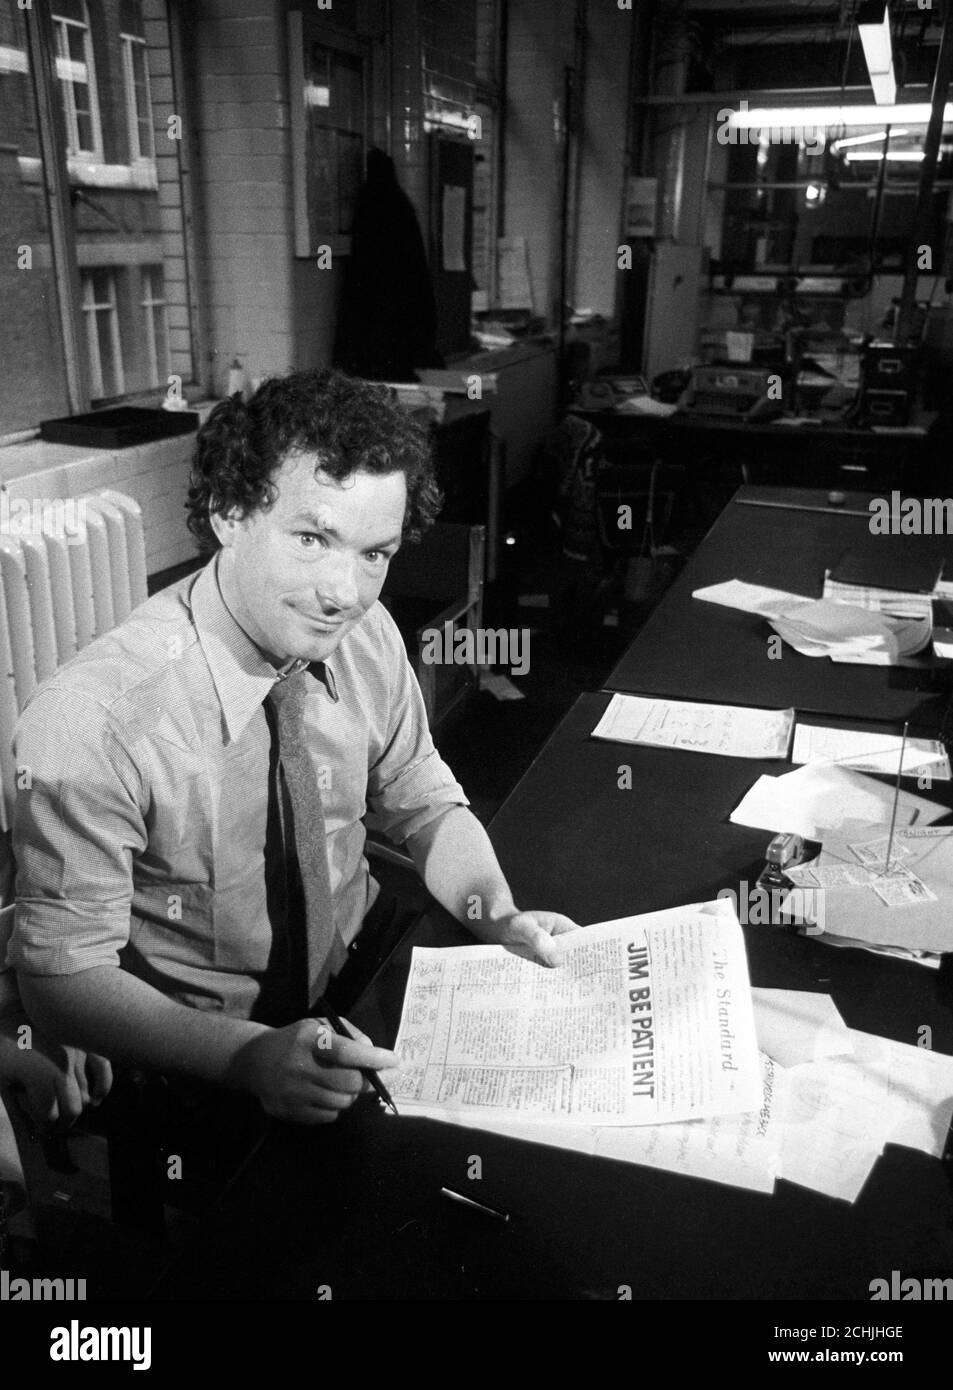 Simon Jenkins, rédacteur en chef du Evening Standard, avec une copie de l'édition d'urgence, des pages dupliquées agrafées ensemble, produites alors que le papier normal n'était pas imprimé à cause d'un différend industriel. Banque D'Images